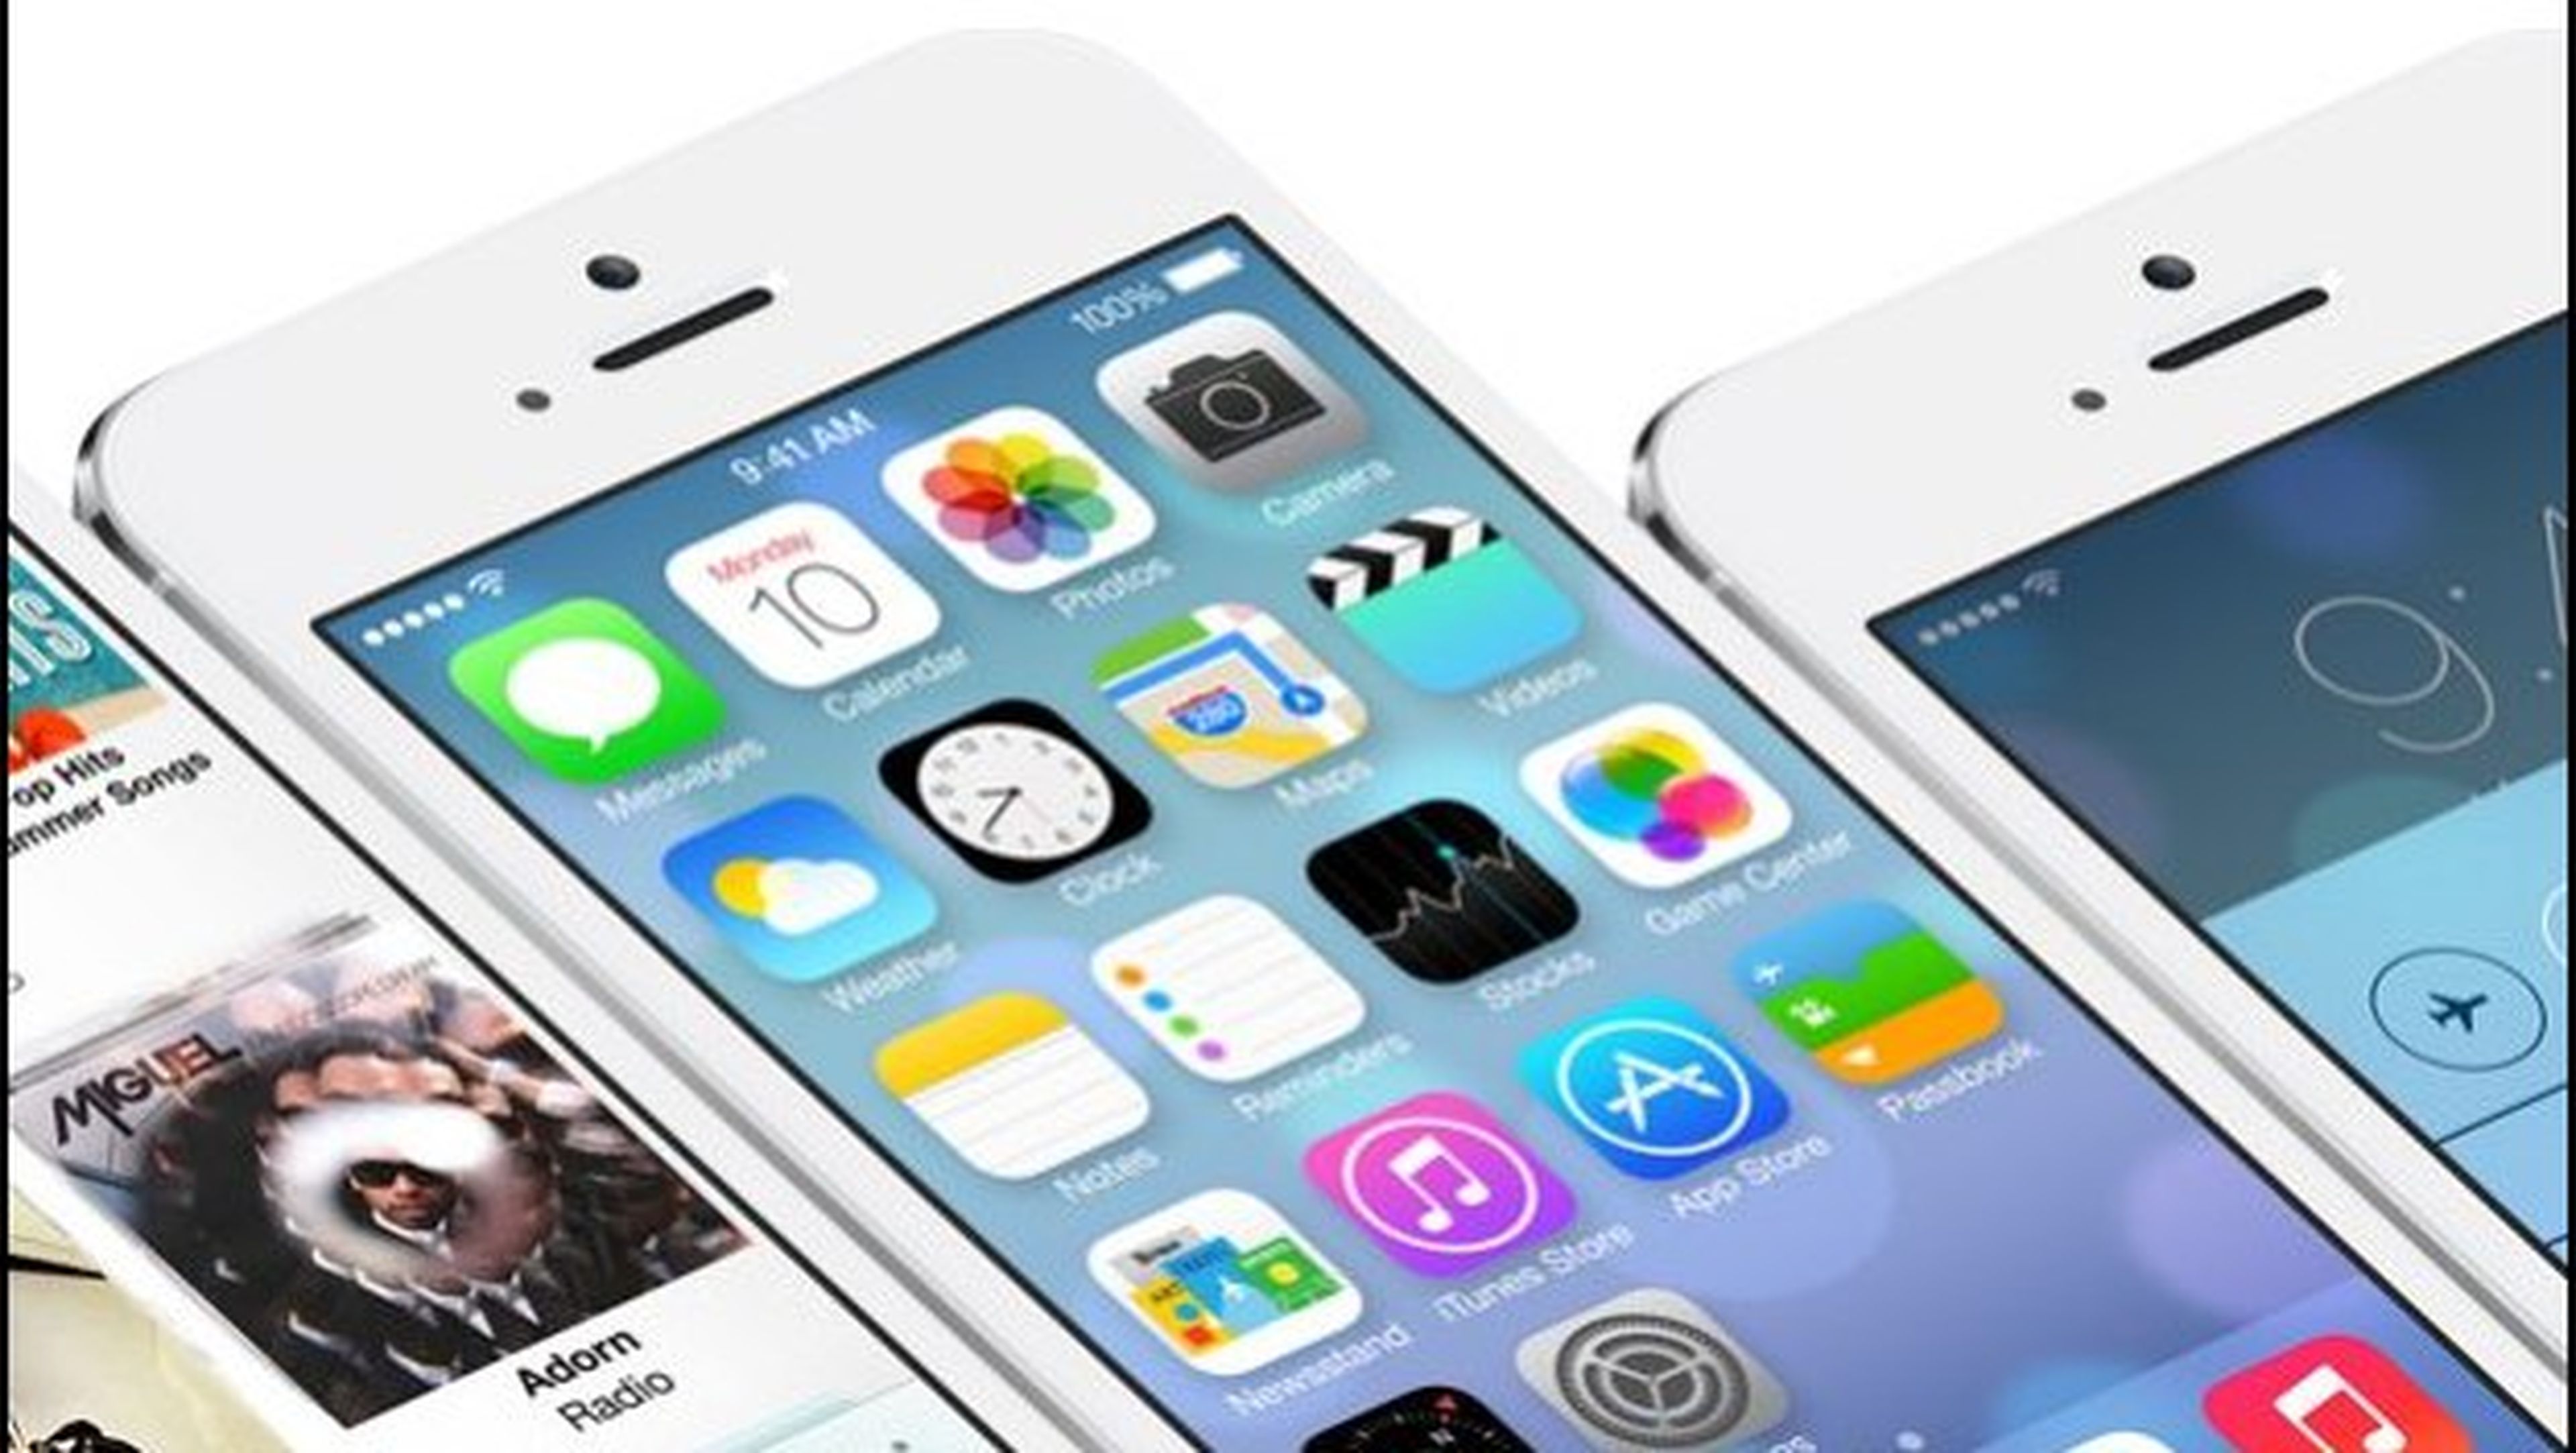 Consiguen el arranque dual de iOS 6 y iOS 7 para iPhone